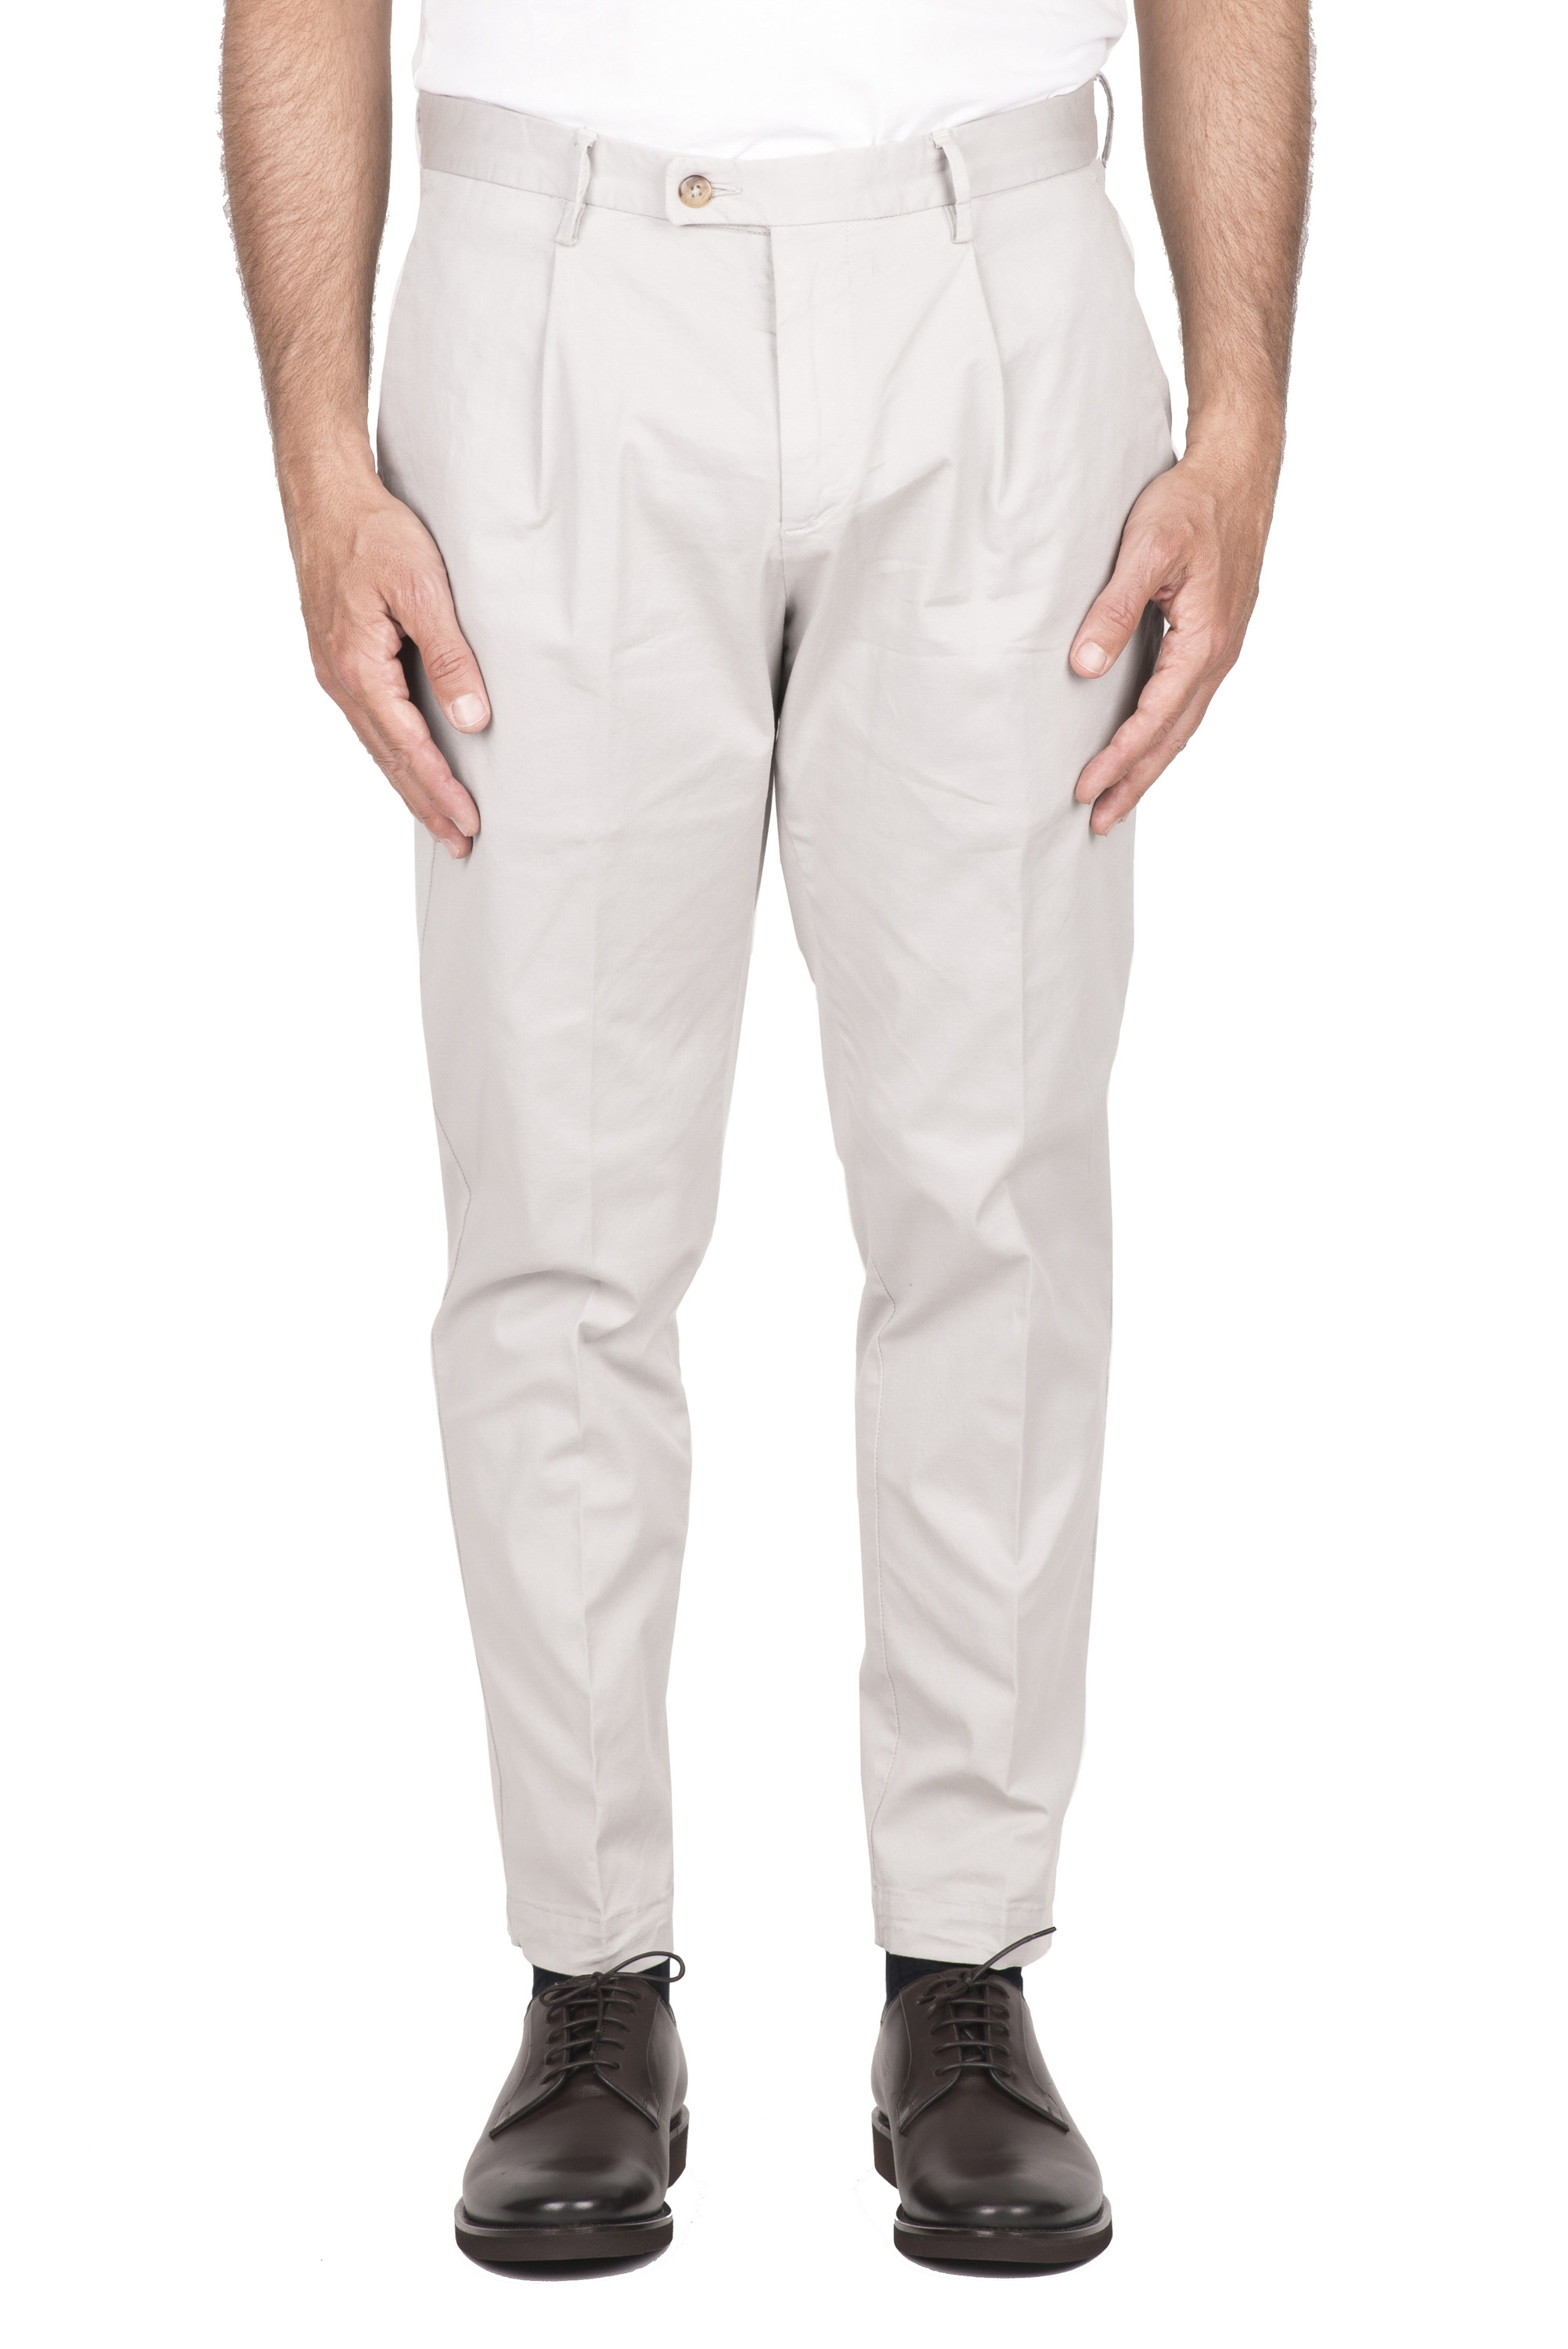 SBU 04602_23AW Pantaloni classico in cotone elasticizzato con pinces grigio perla 01